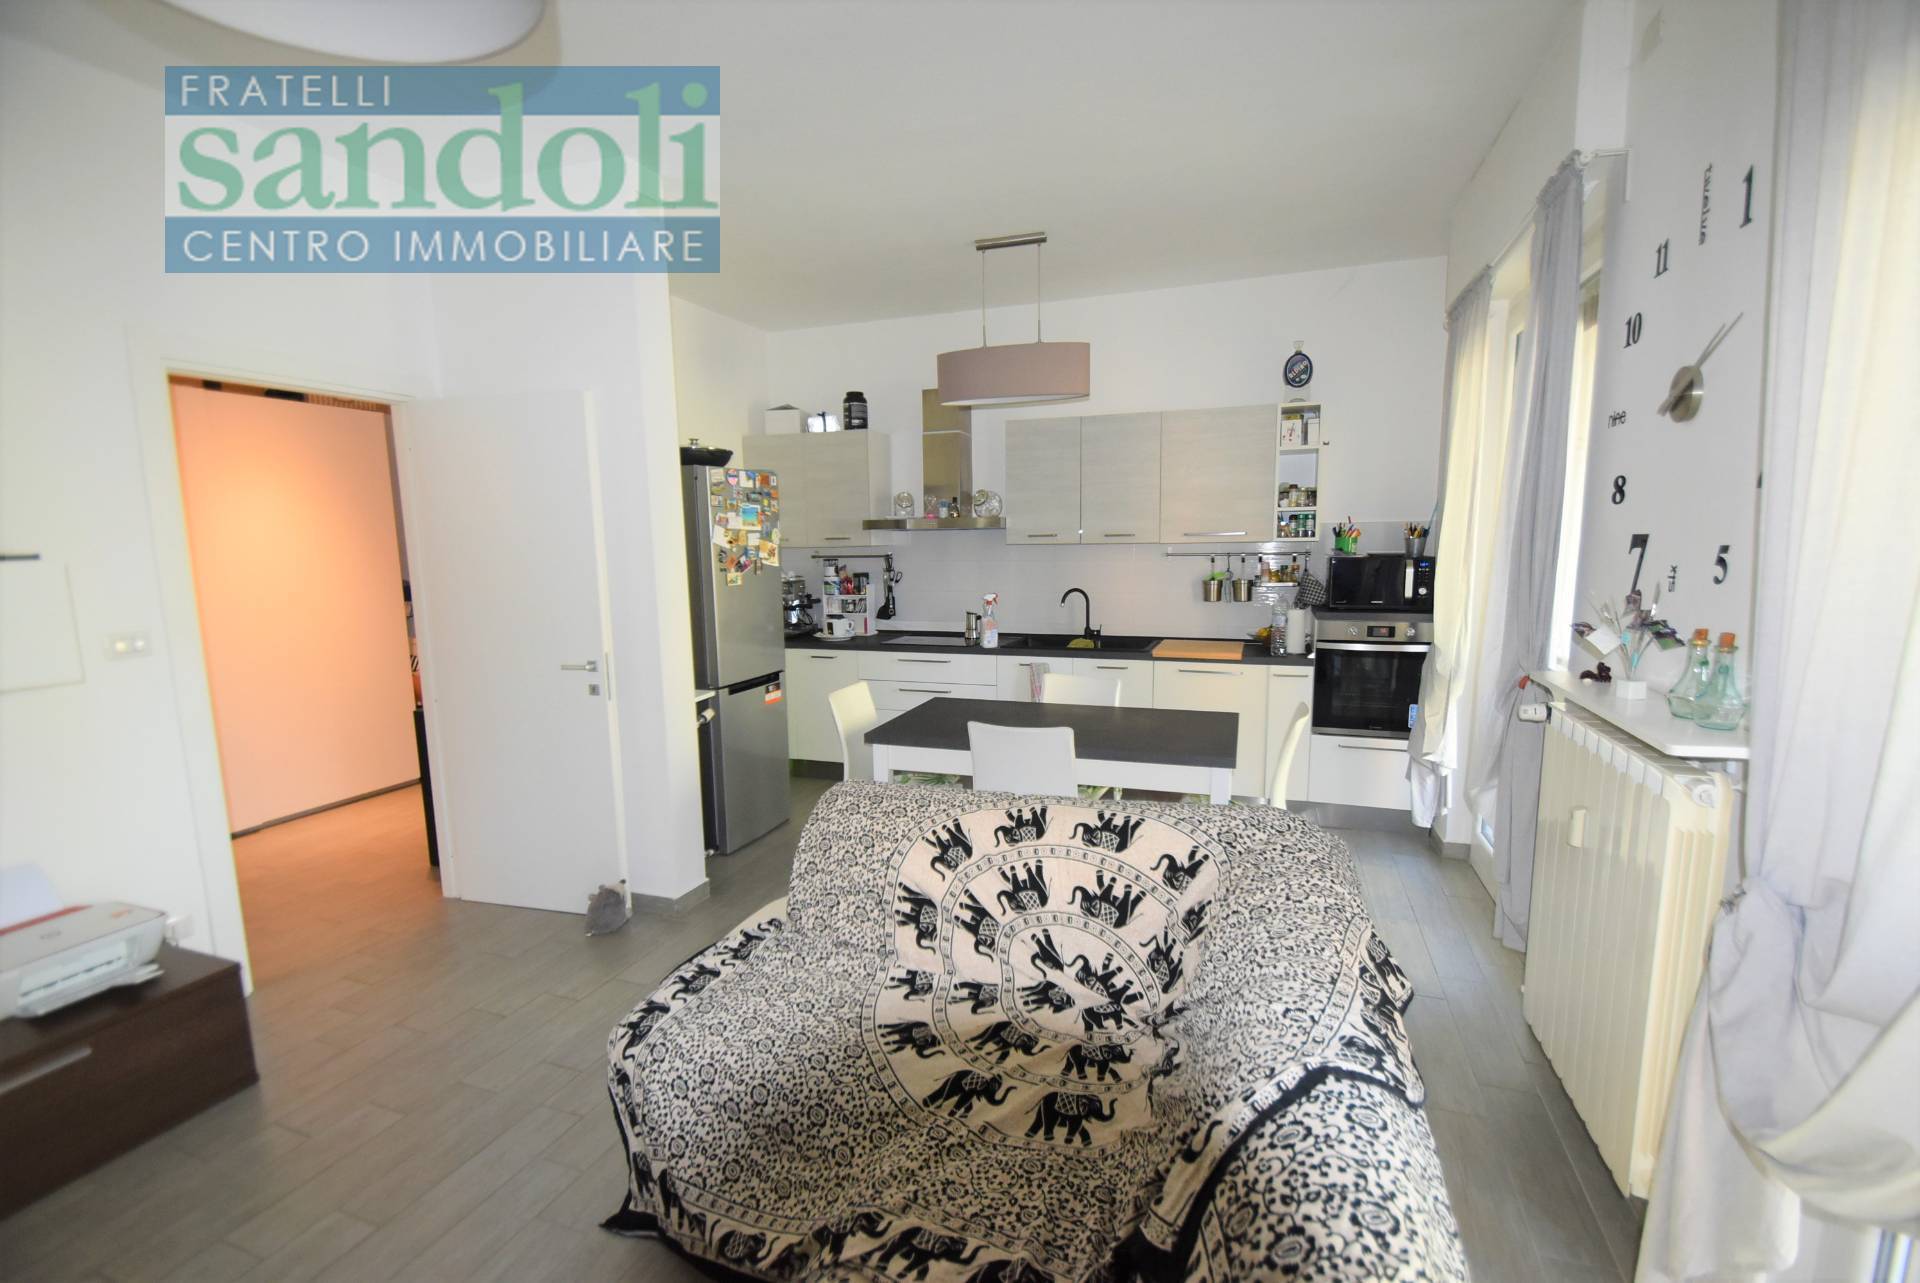 Appartamento in vendita a Vercelli, 2 locali, prezzo € 65.000 | PortaleAgenzieImmobiliari.it